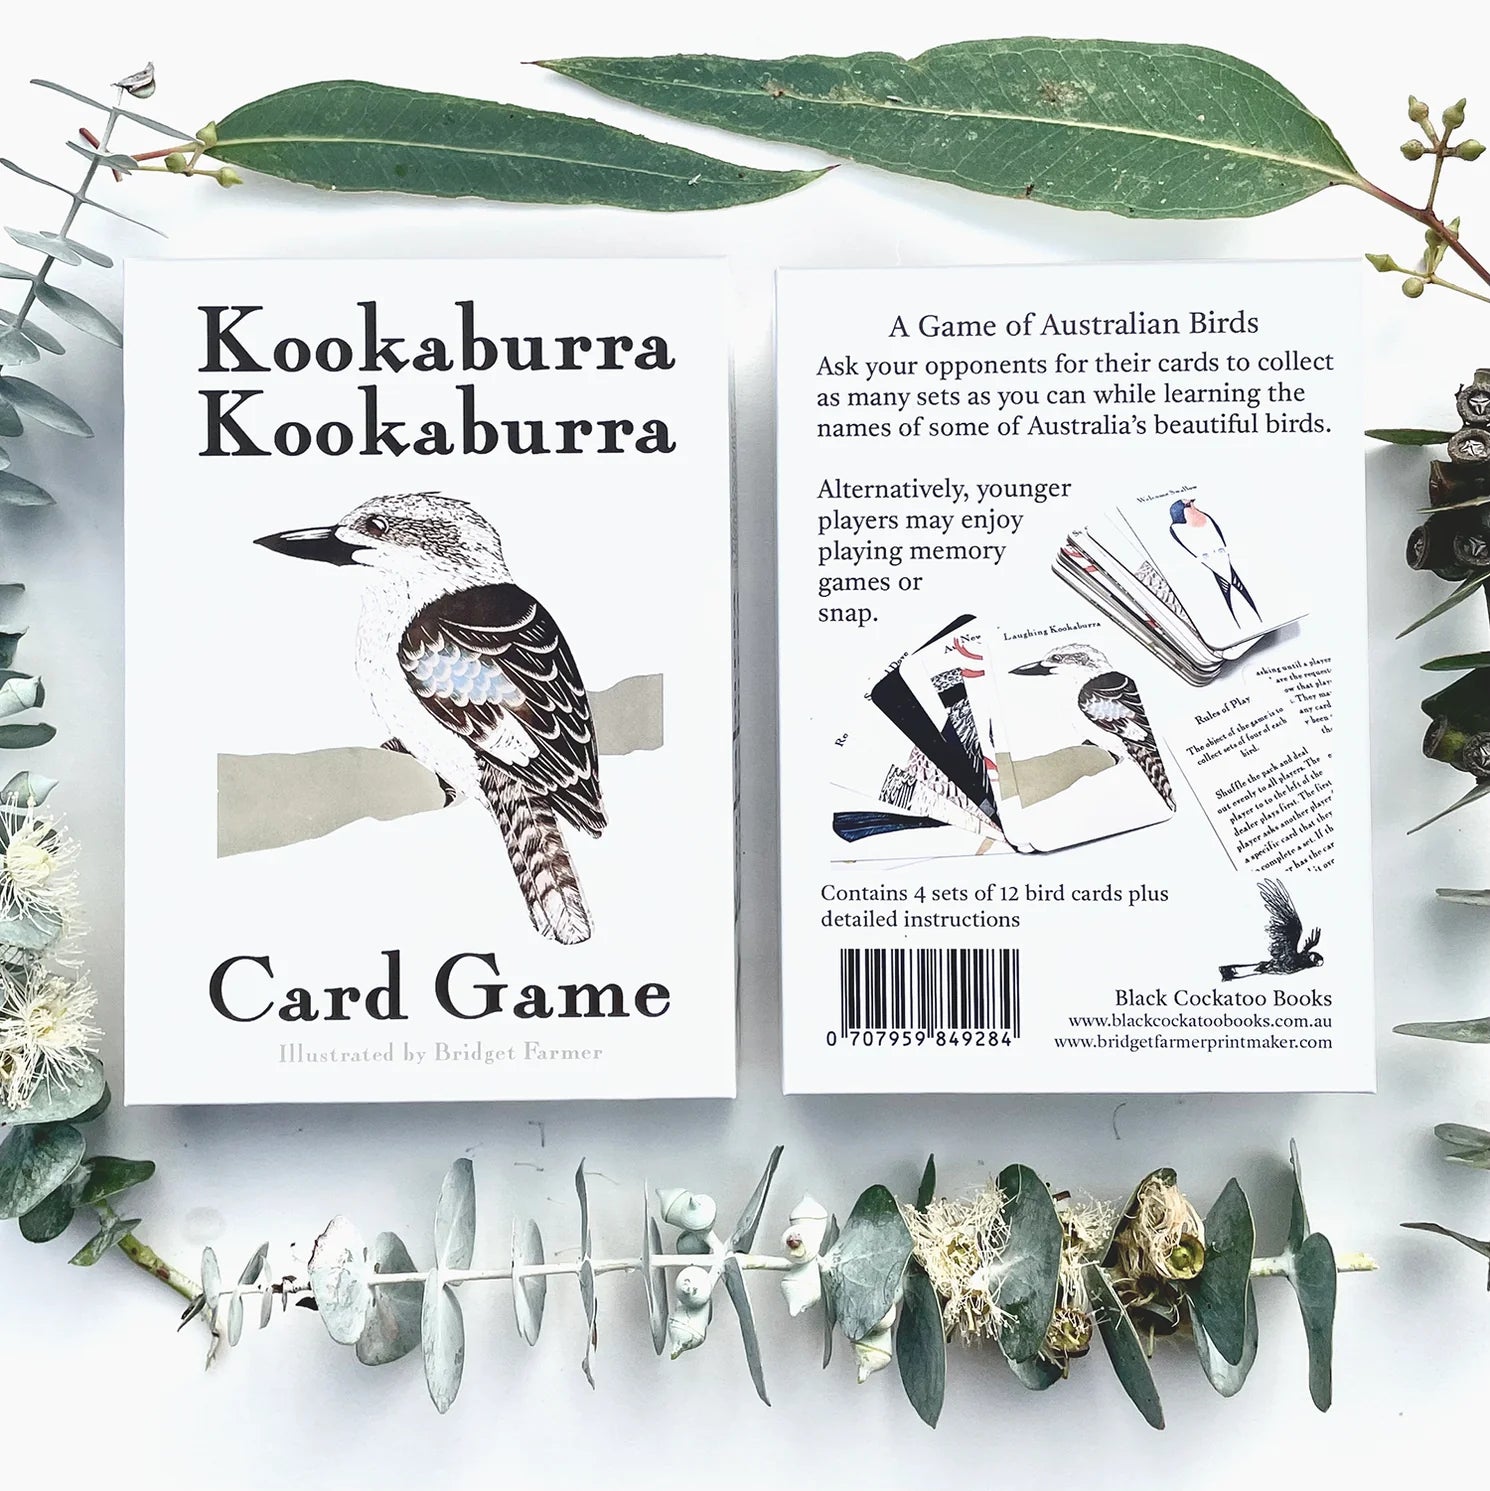 Book and Game Combo Deal- KOOKABURRA KOOKABURRA